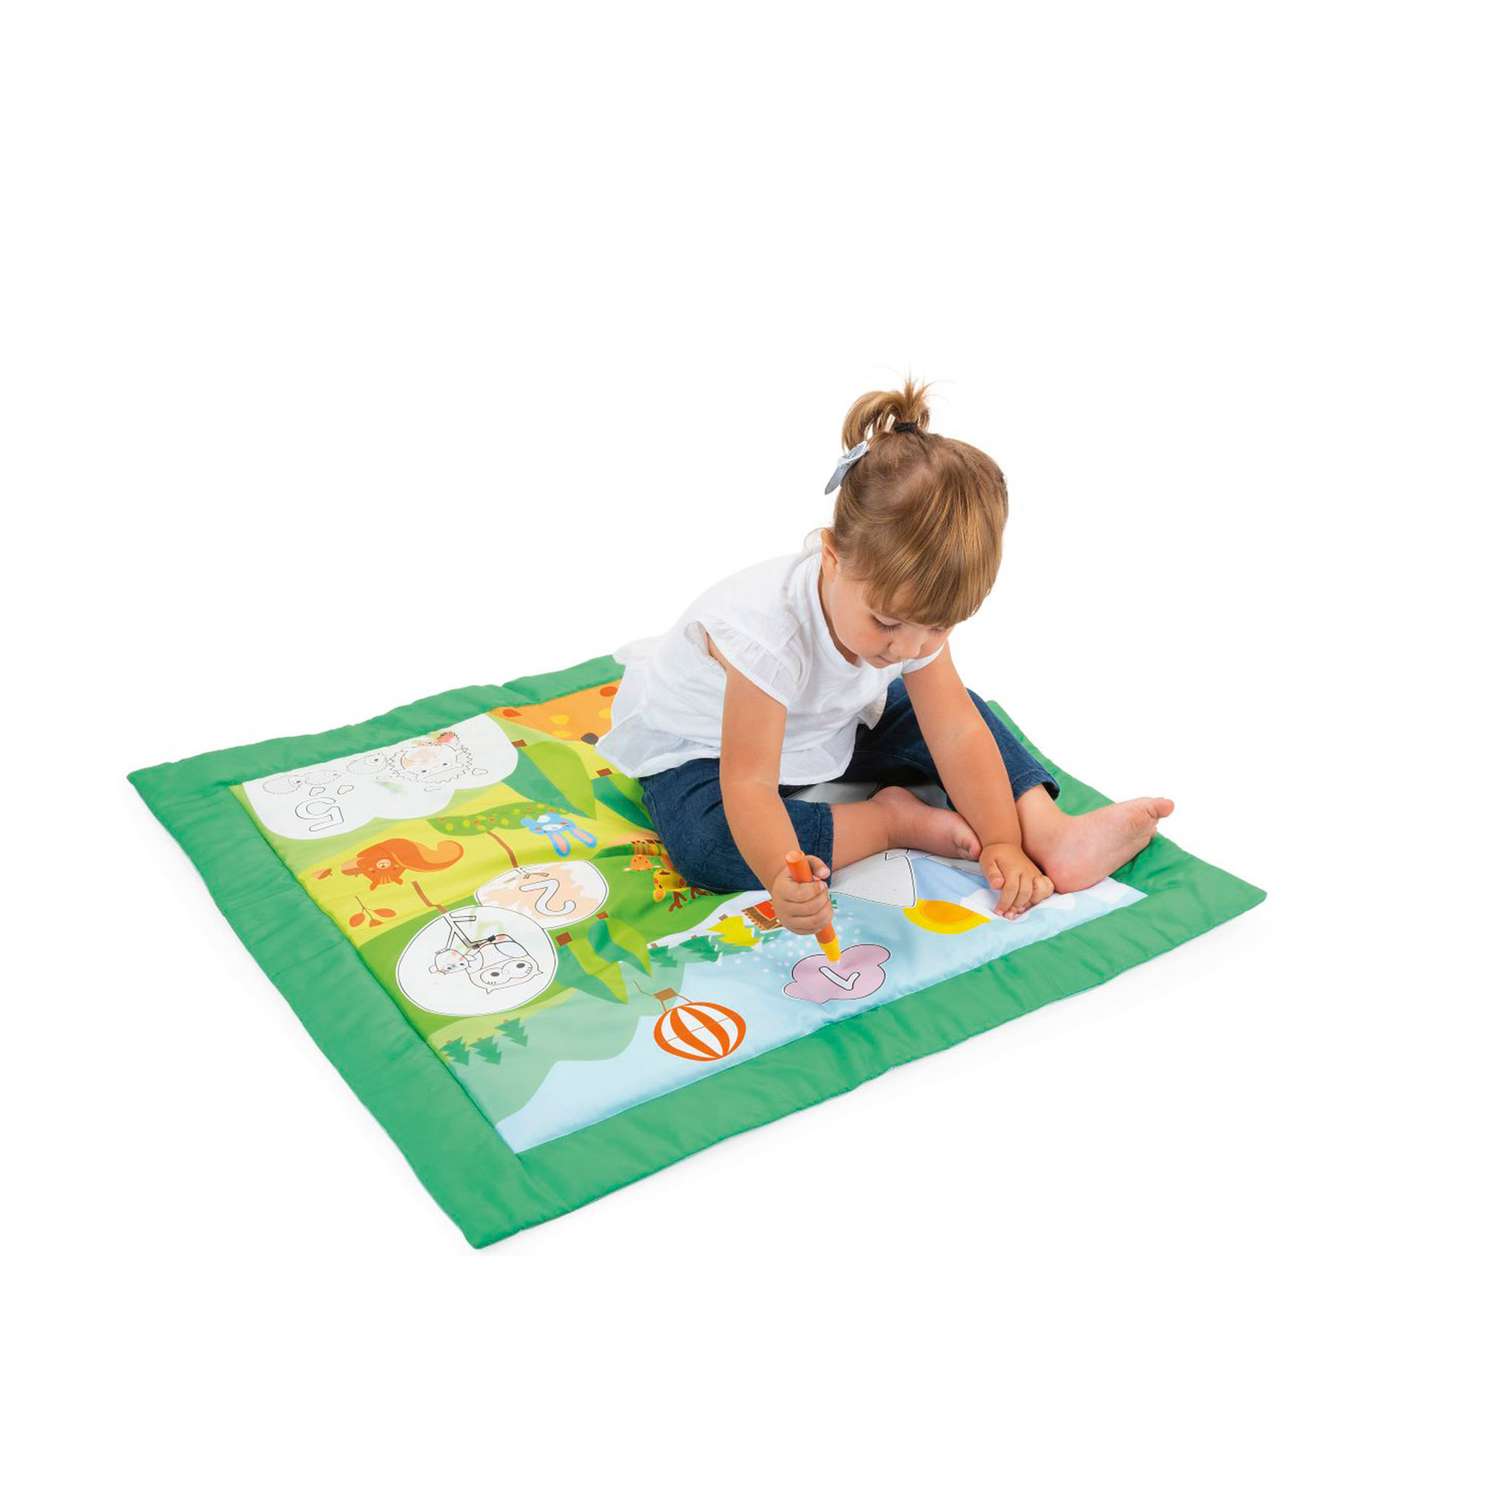 Коврик CHICCO Игровой развивающий детский коврик Colour Mat - фото 5